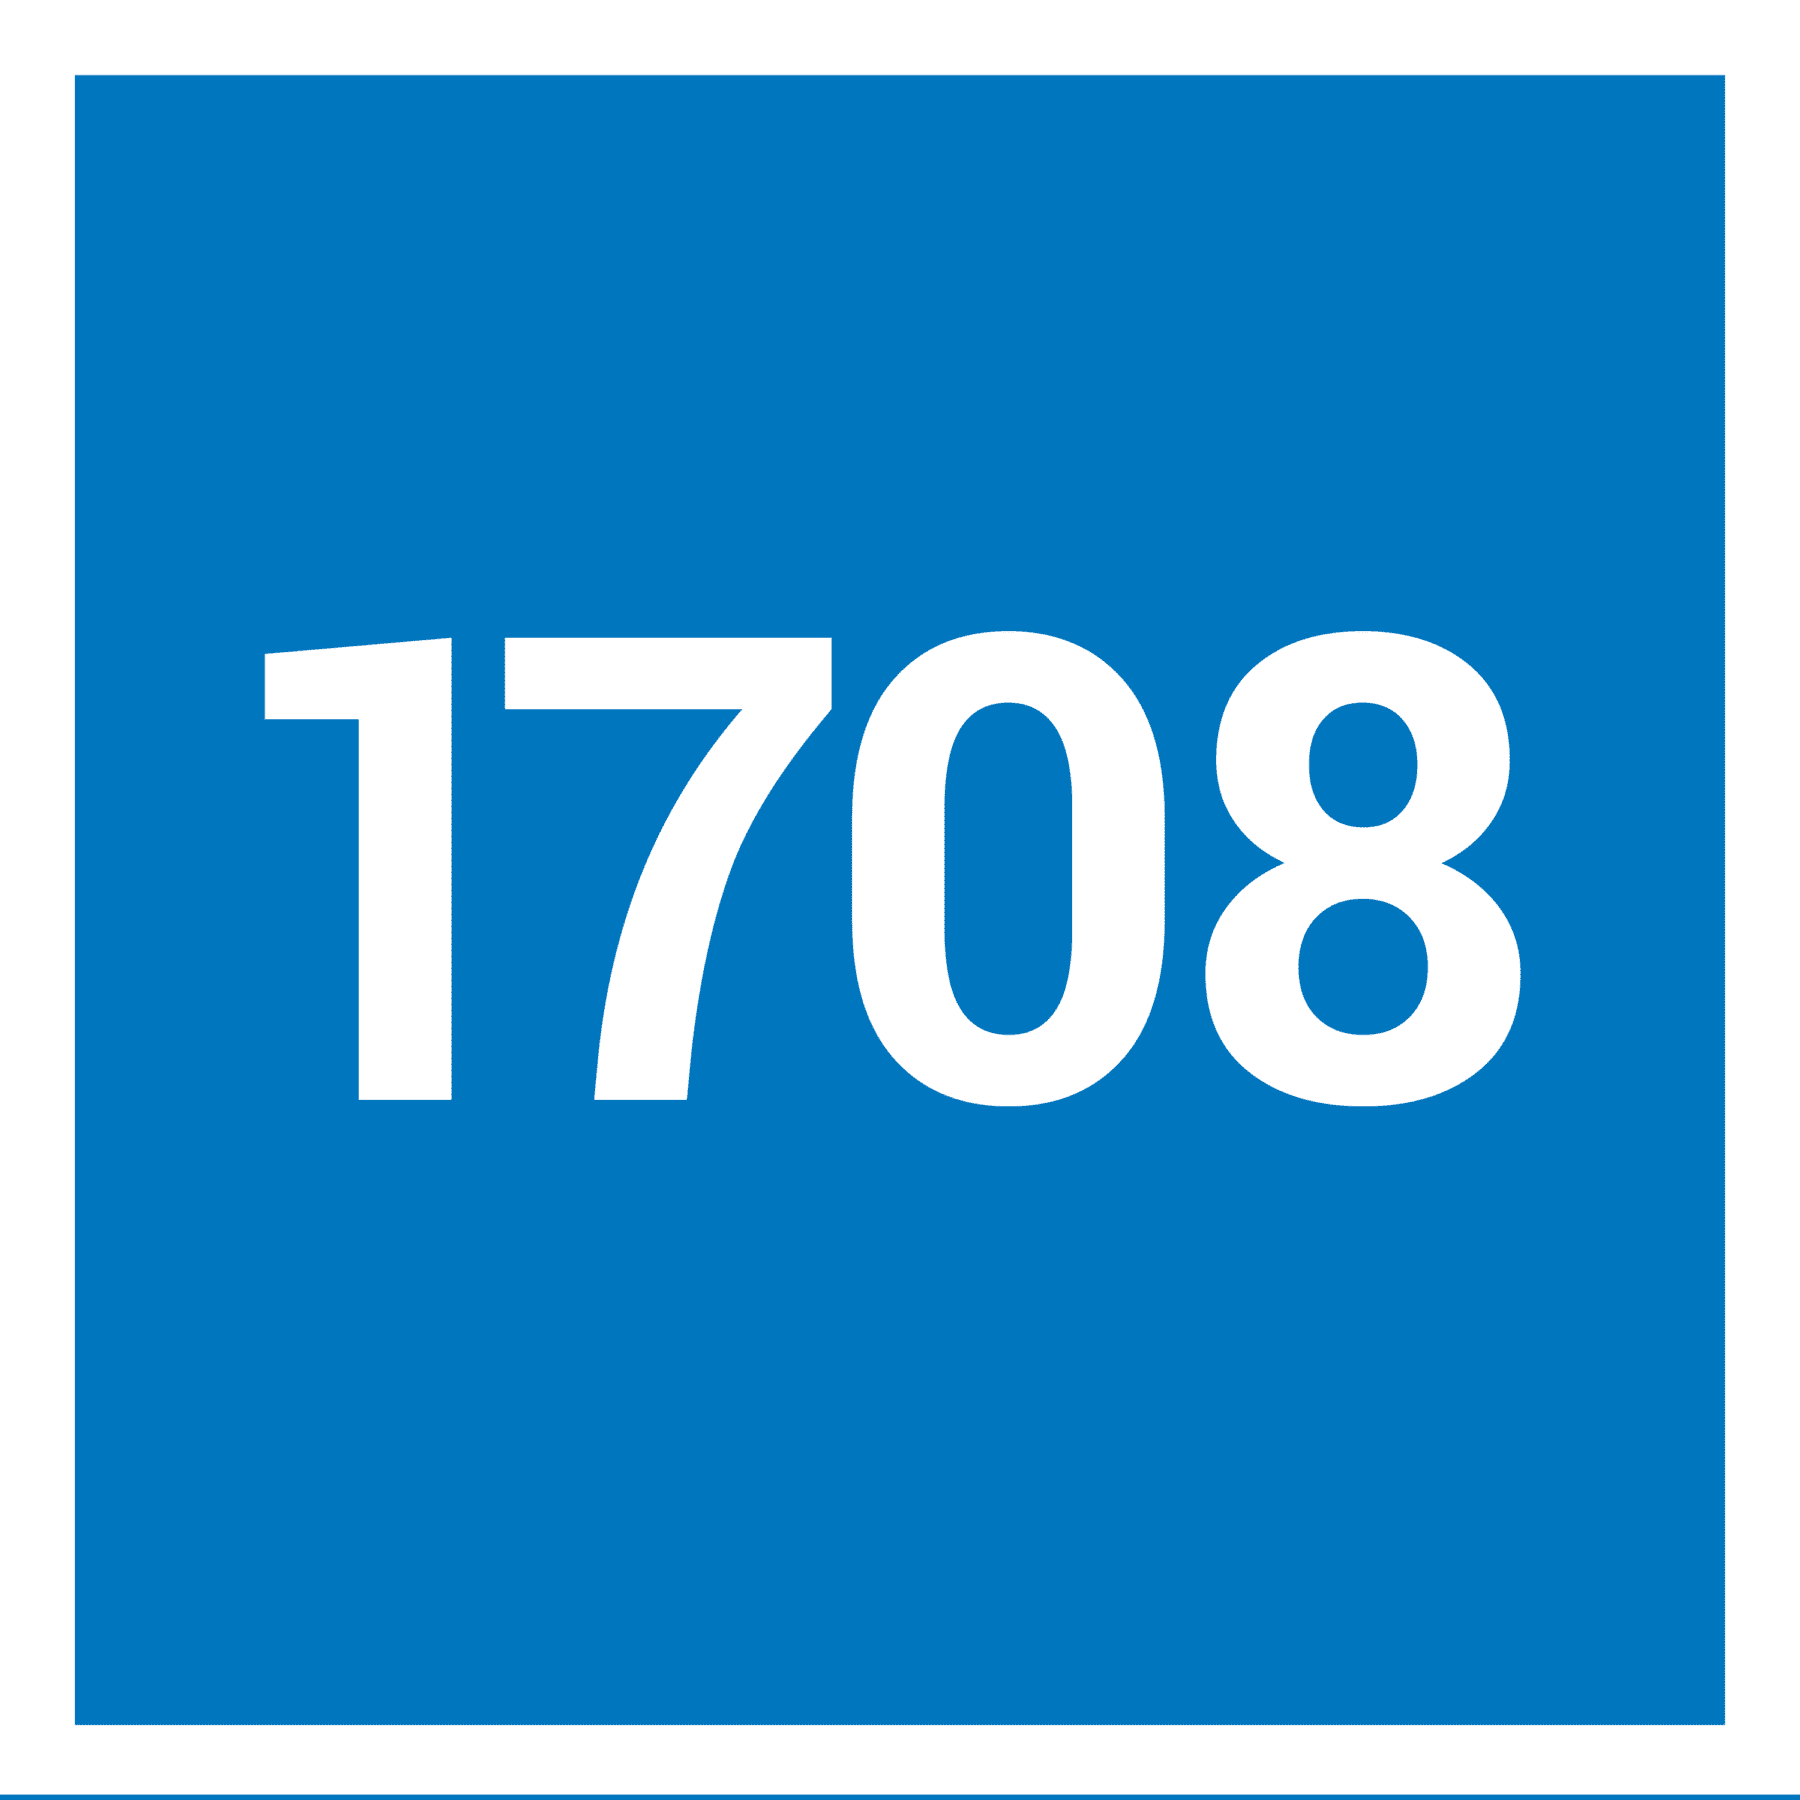 1612